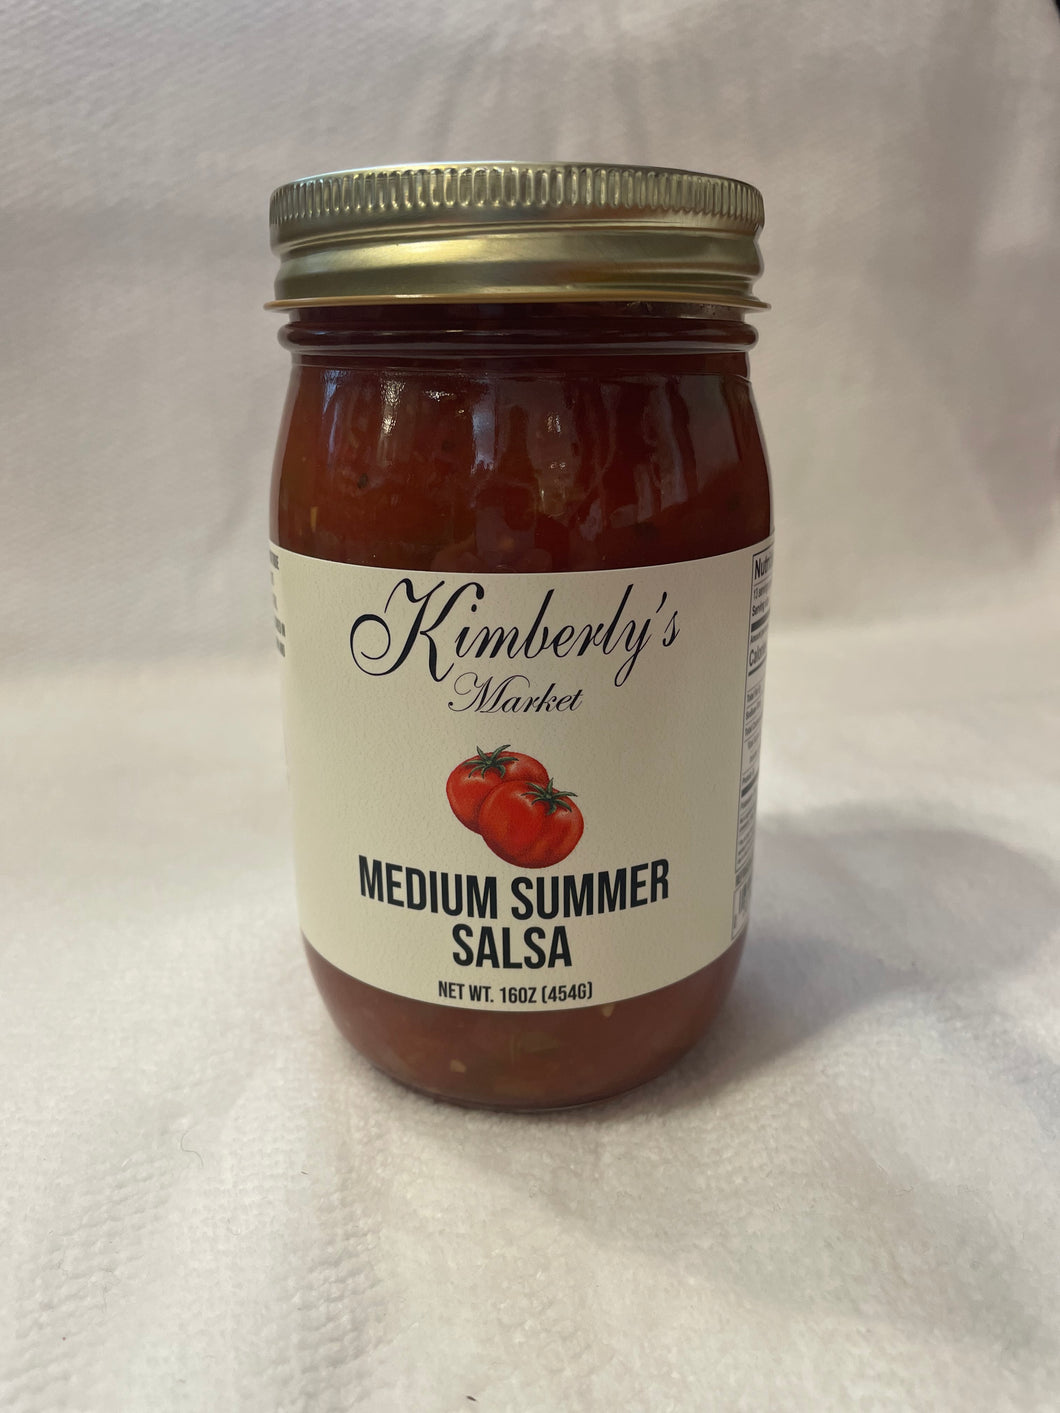 Medium Summer Salsa